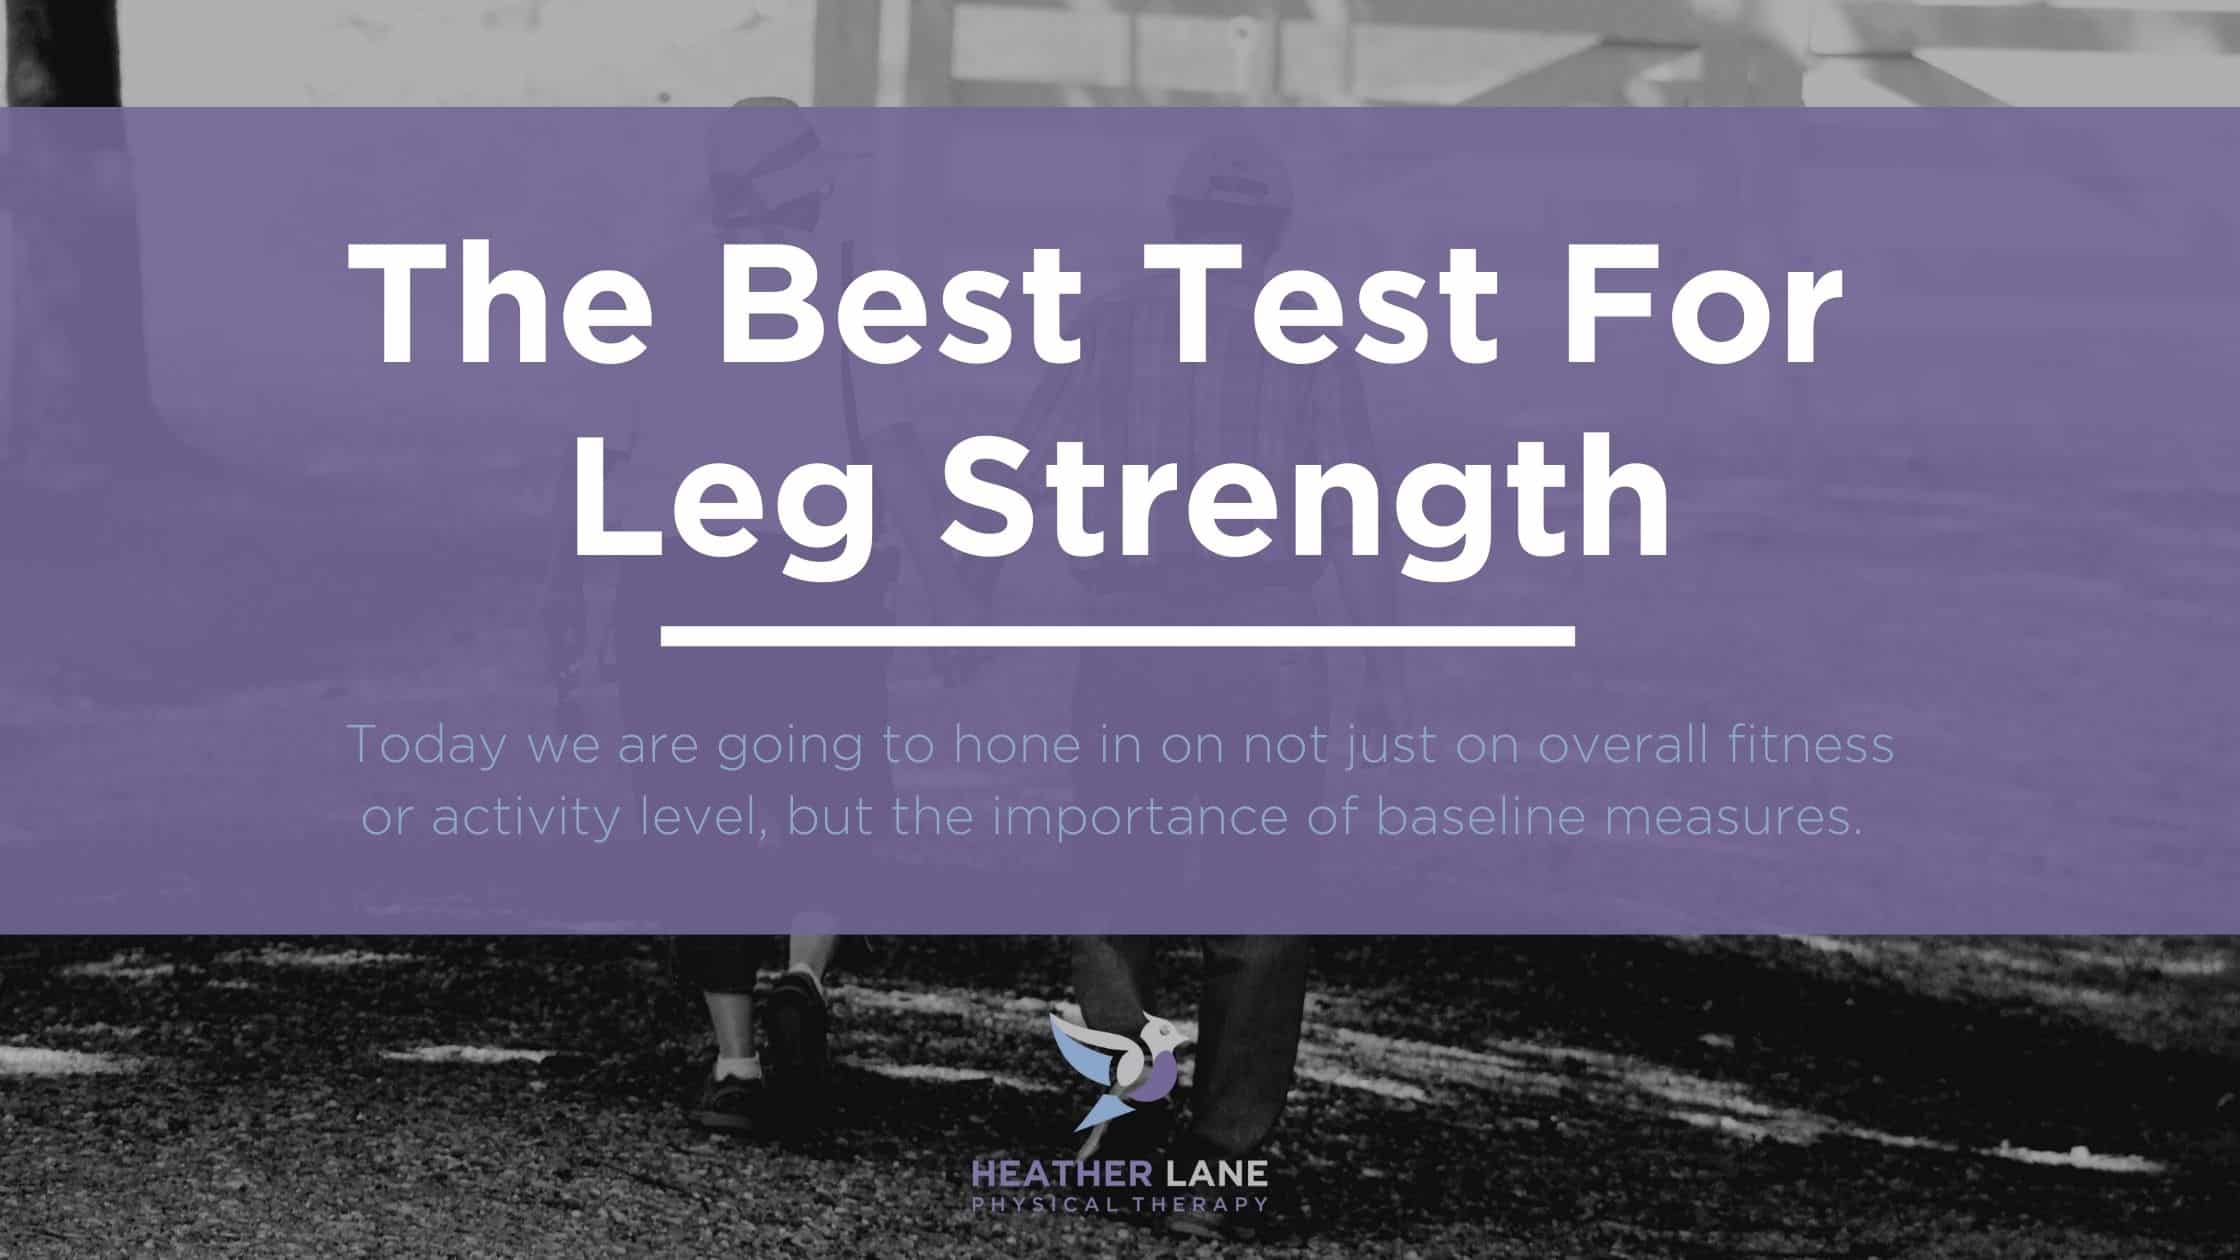 Test for Leg Strength